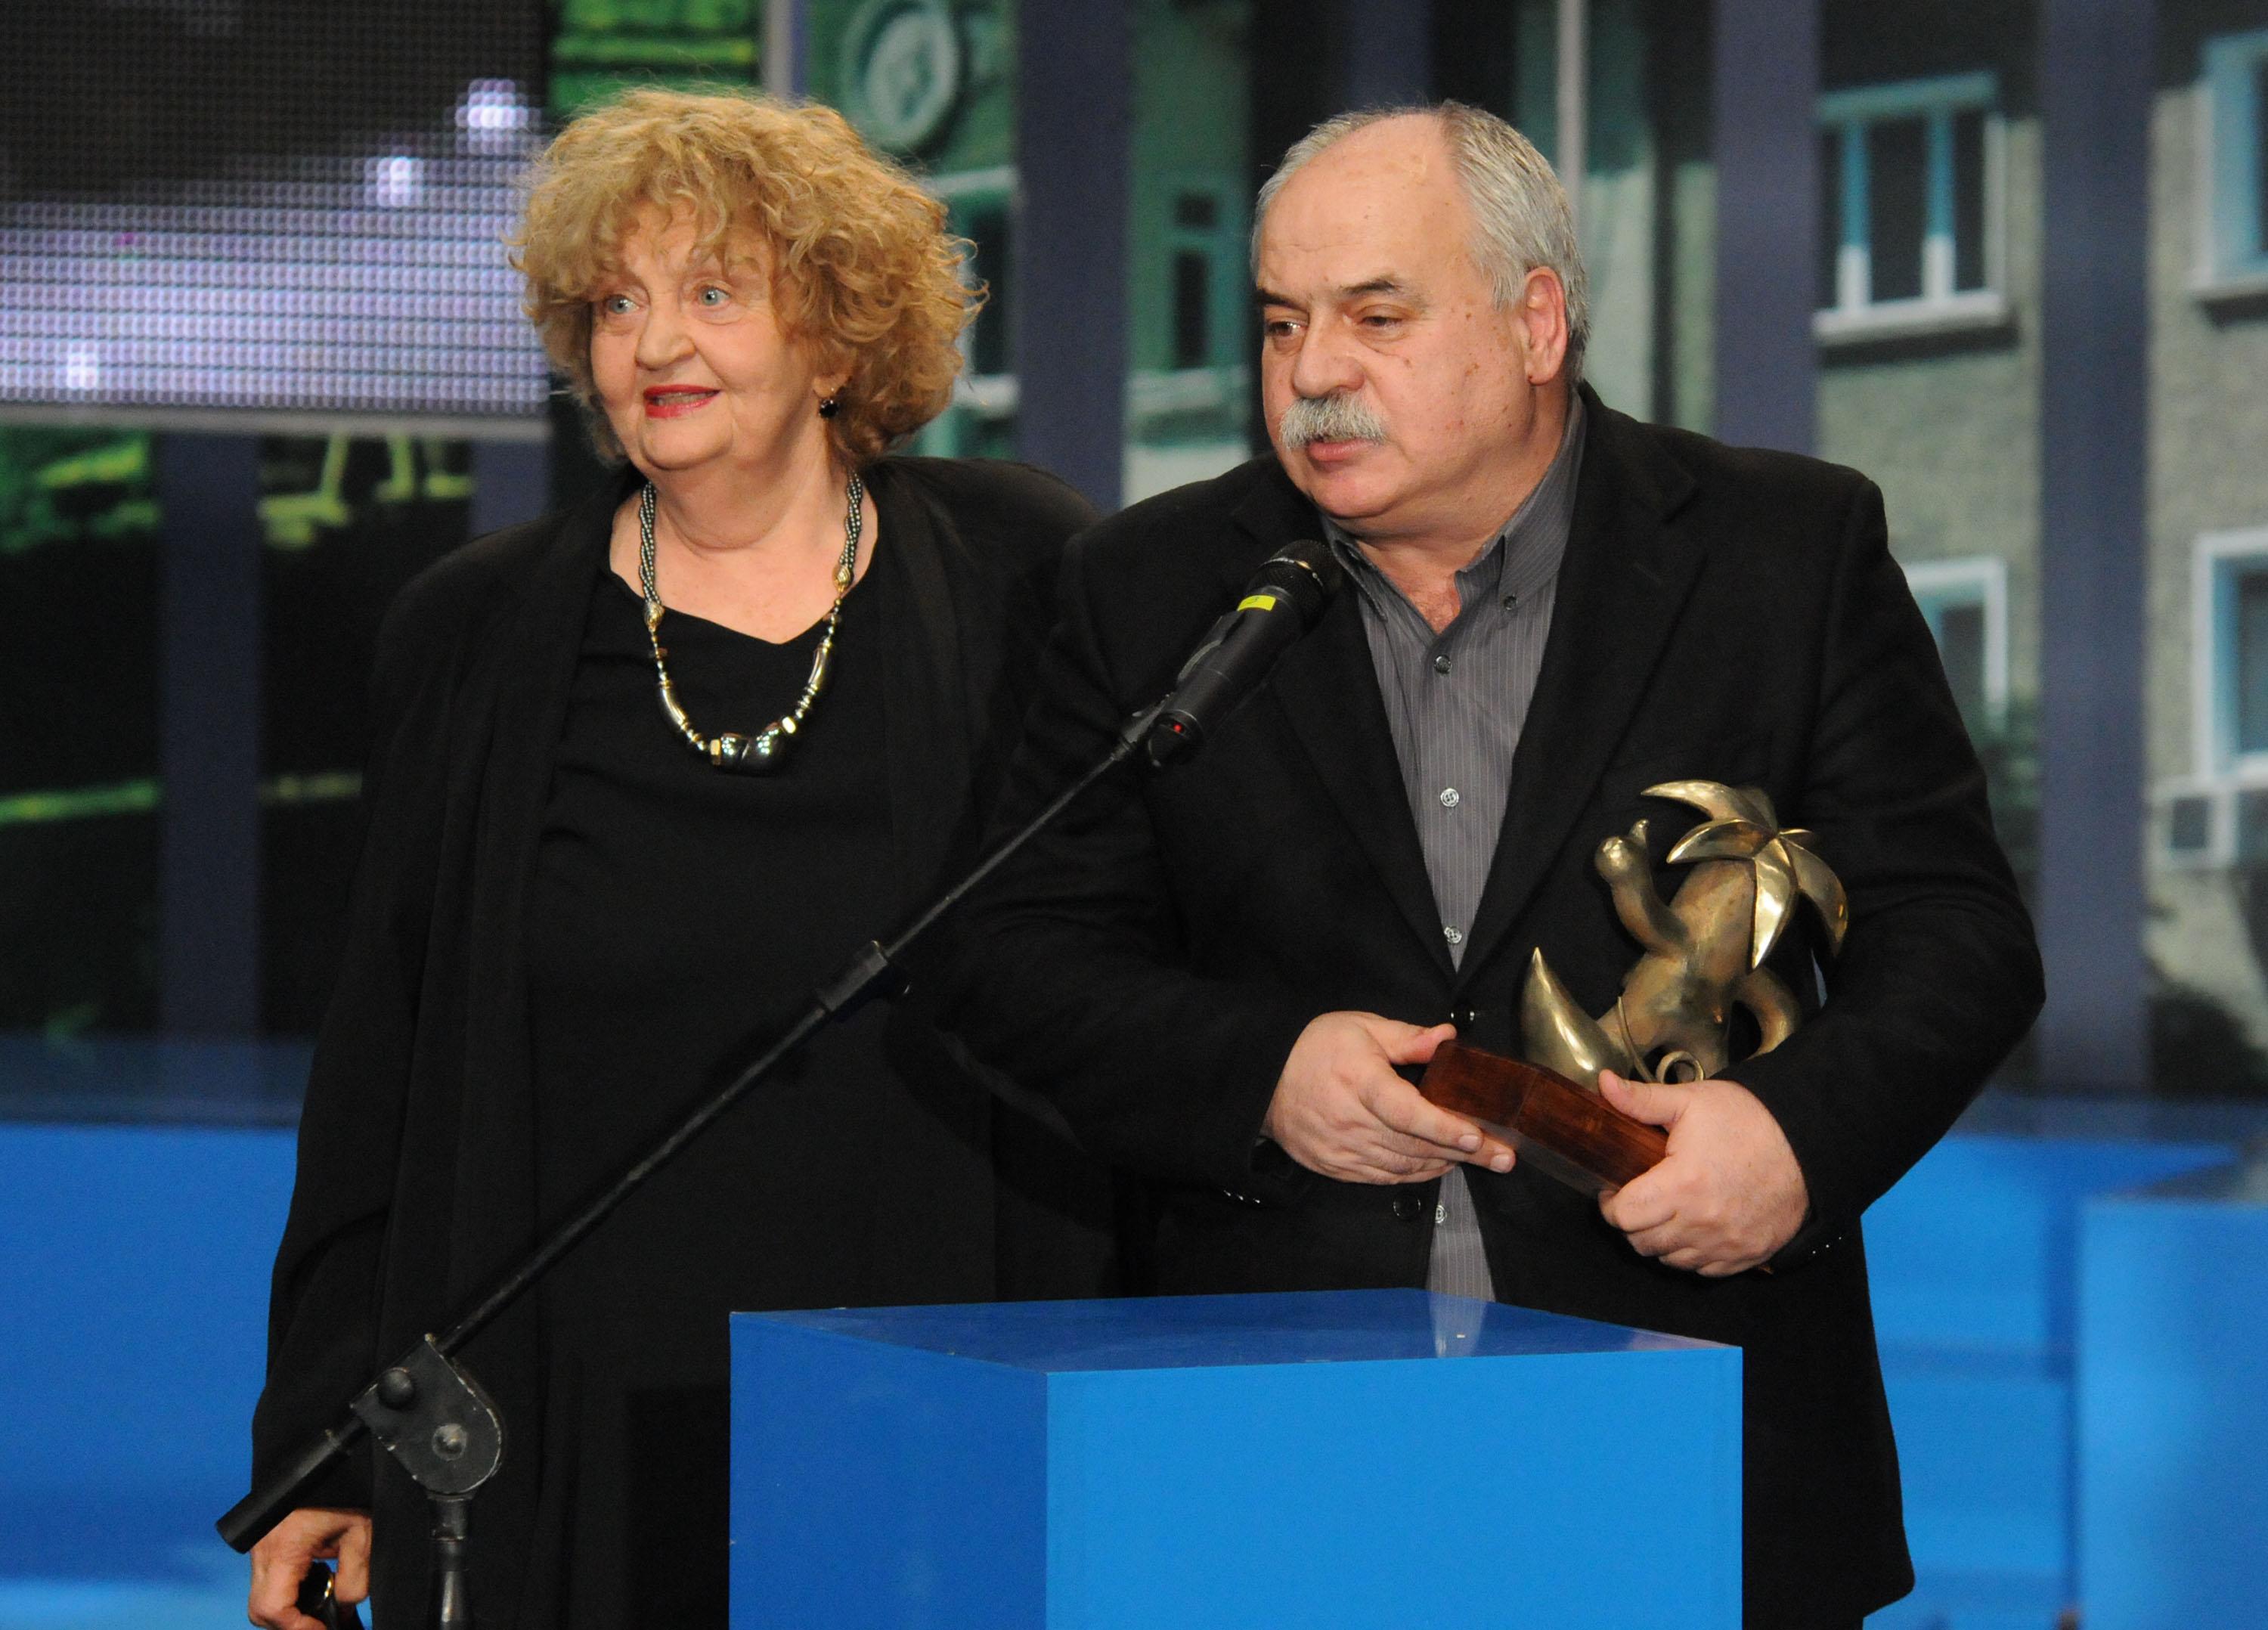 Павел Васев прие от името на Александър Морфов наградата за най-добро представление „Животът е прекрасен“ на Народния театър. От